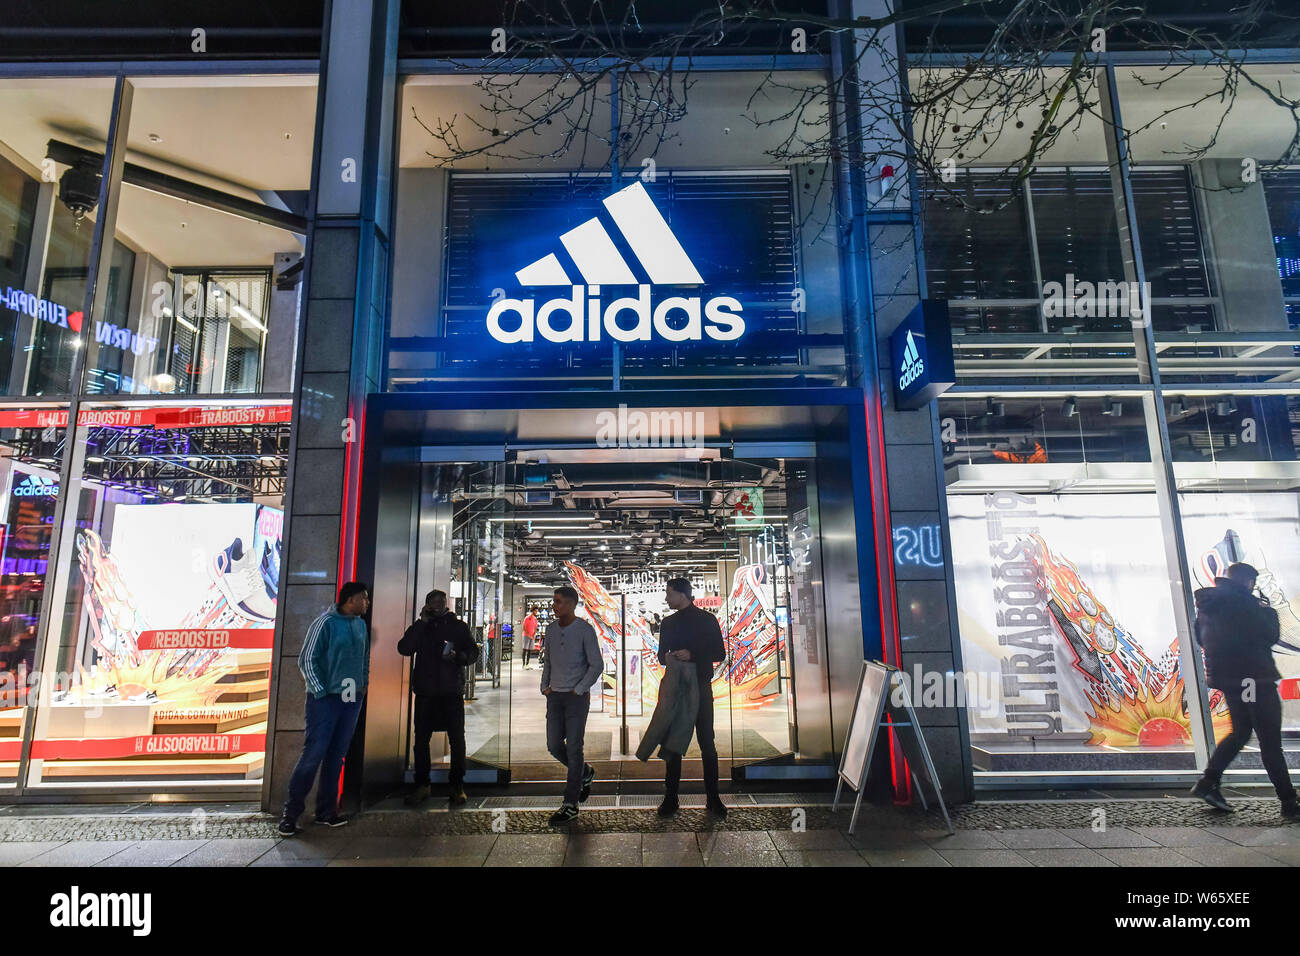 adidas shop in berlin